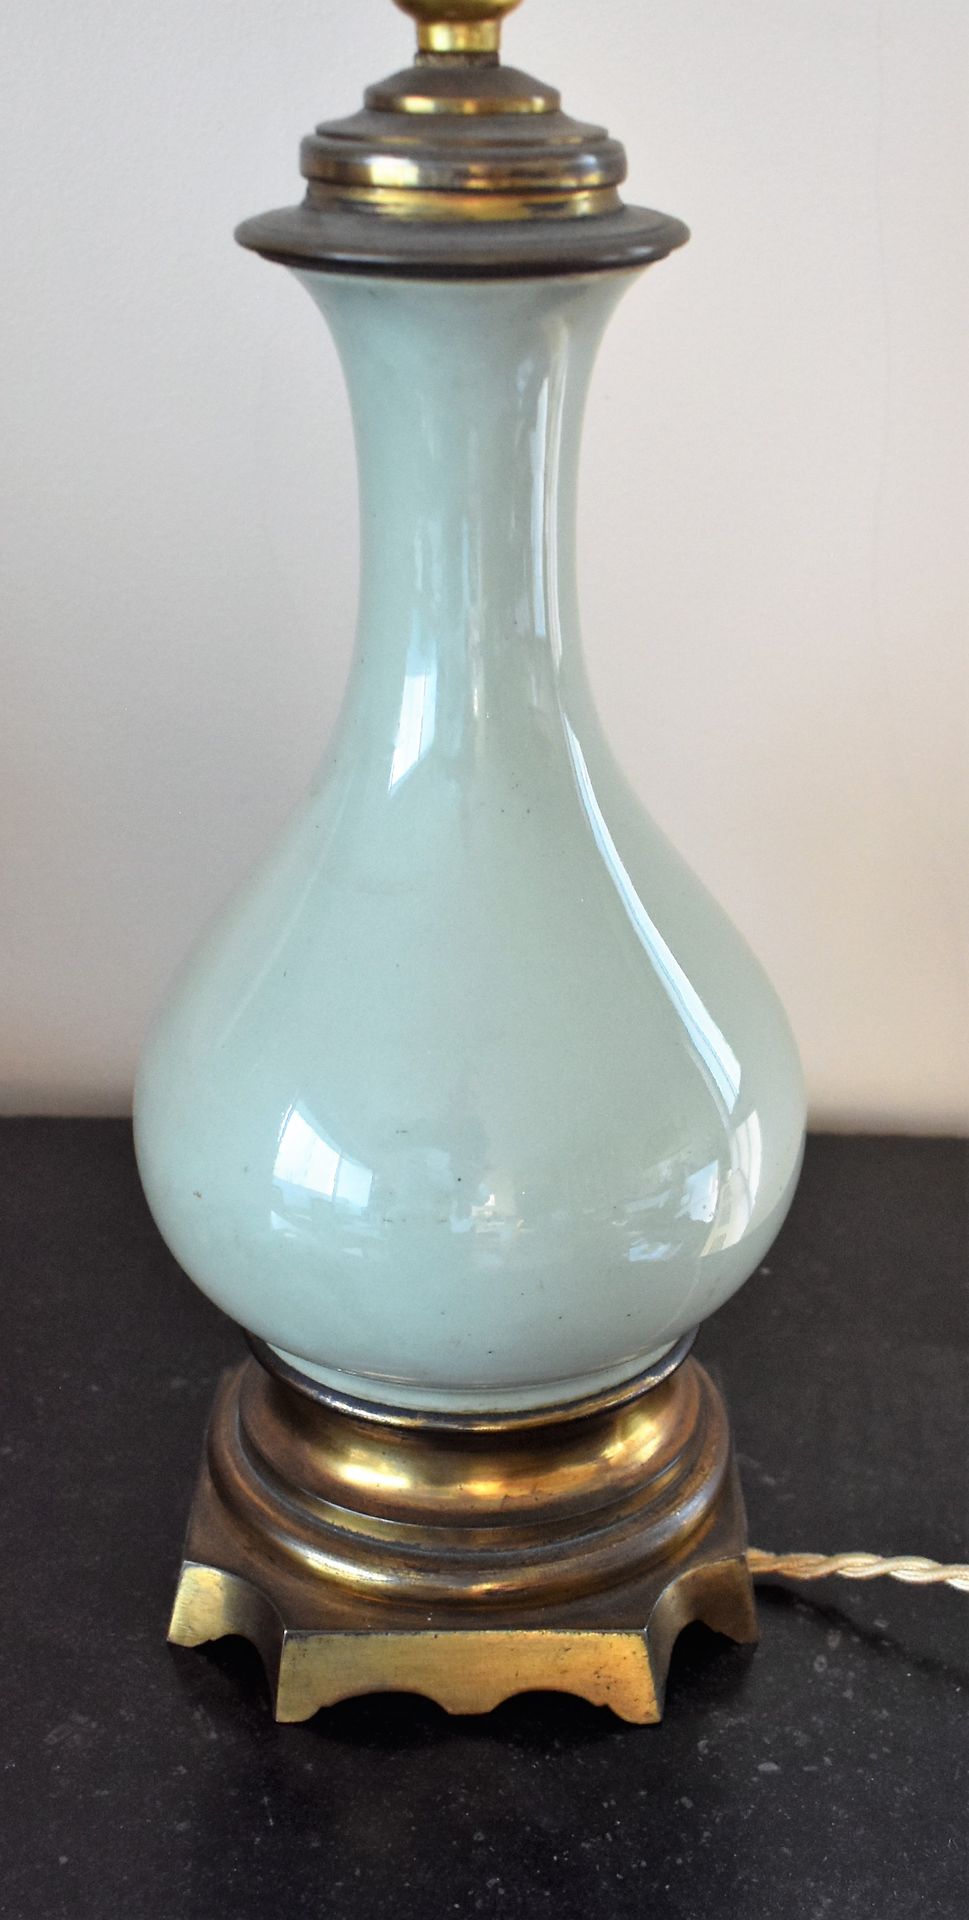 PAIRE DE LAMPES à pétrole en porcelaine céladon, monture bronze. Haut. 29 cm